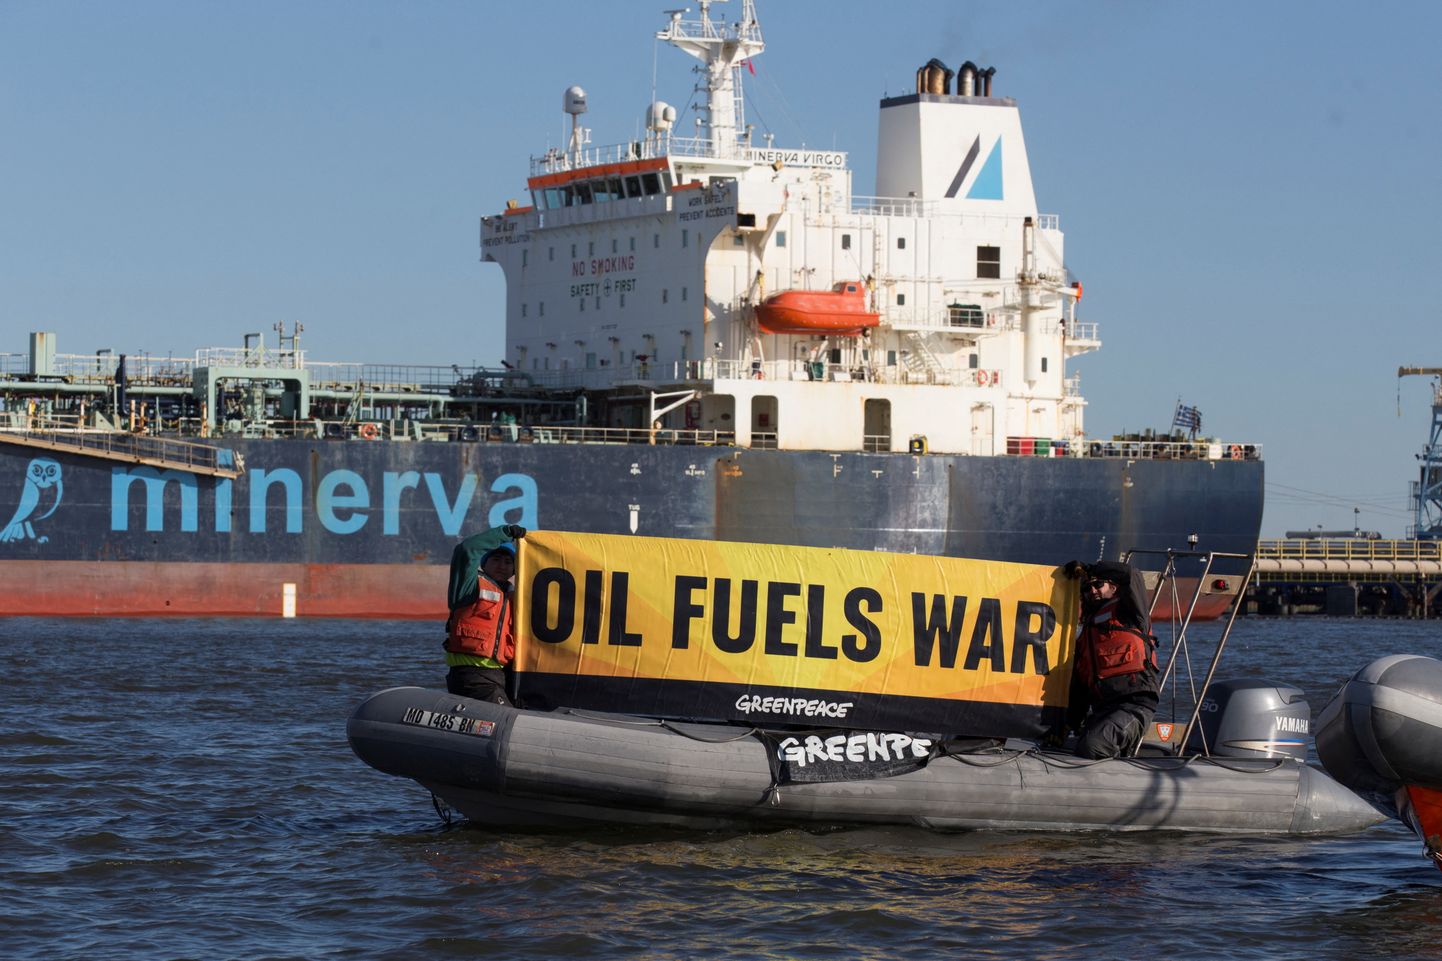 Greenpeace'i aktivistid sõjavastase plakatiga Vene naftalastiga tankeri Minerva Virgo juures mullu märtsis.